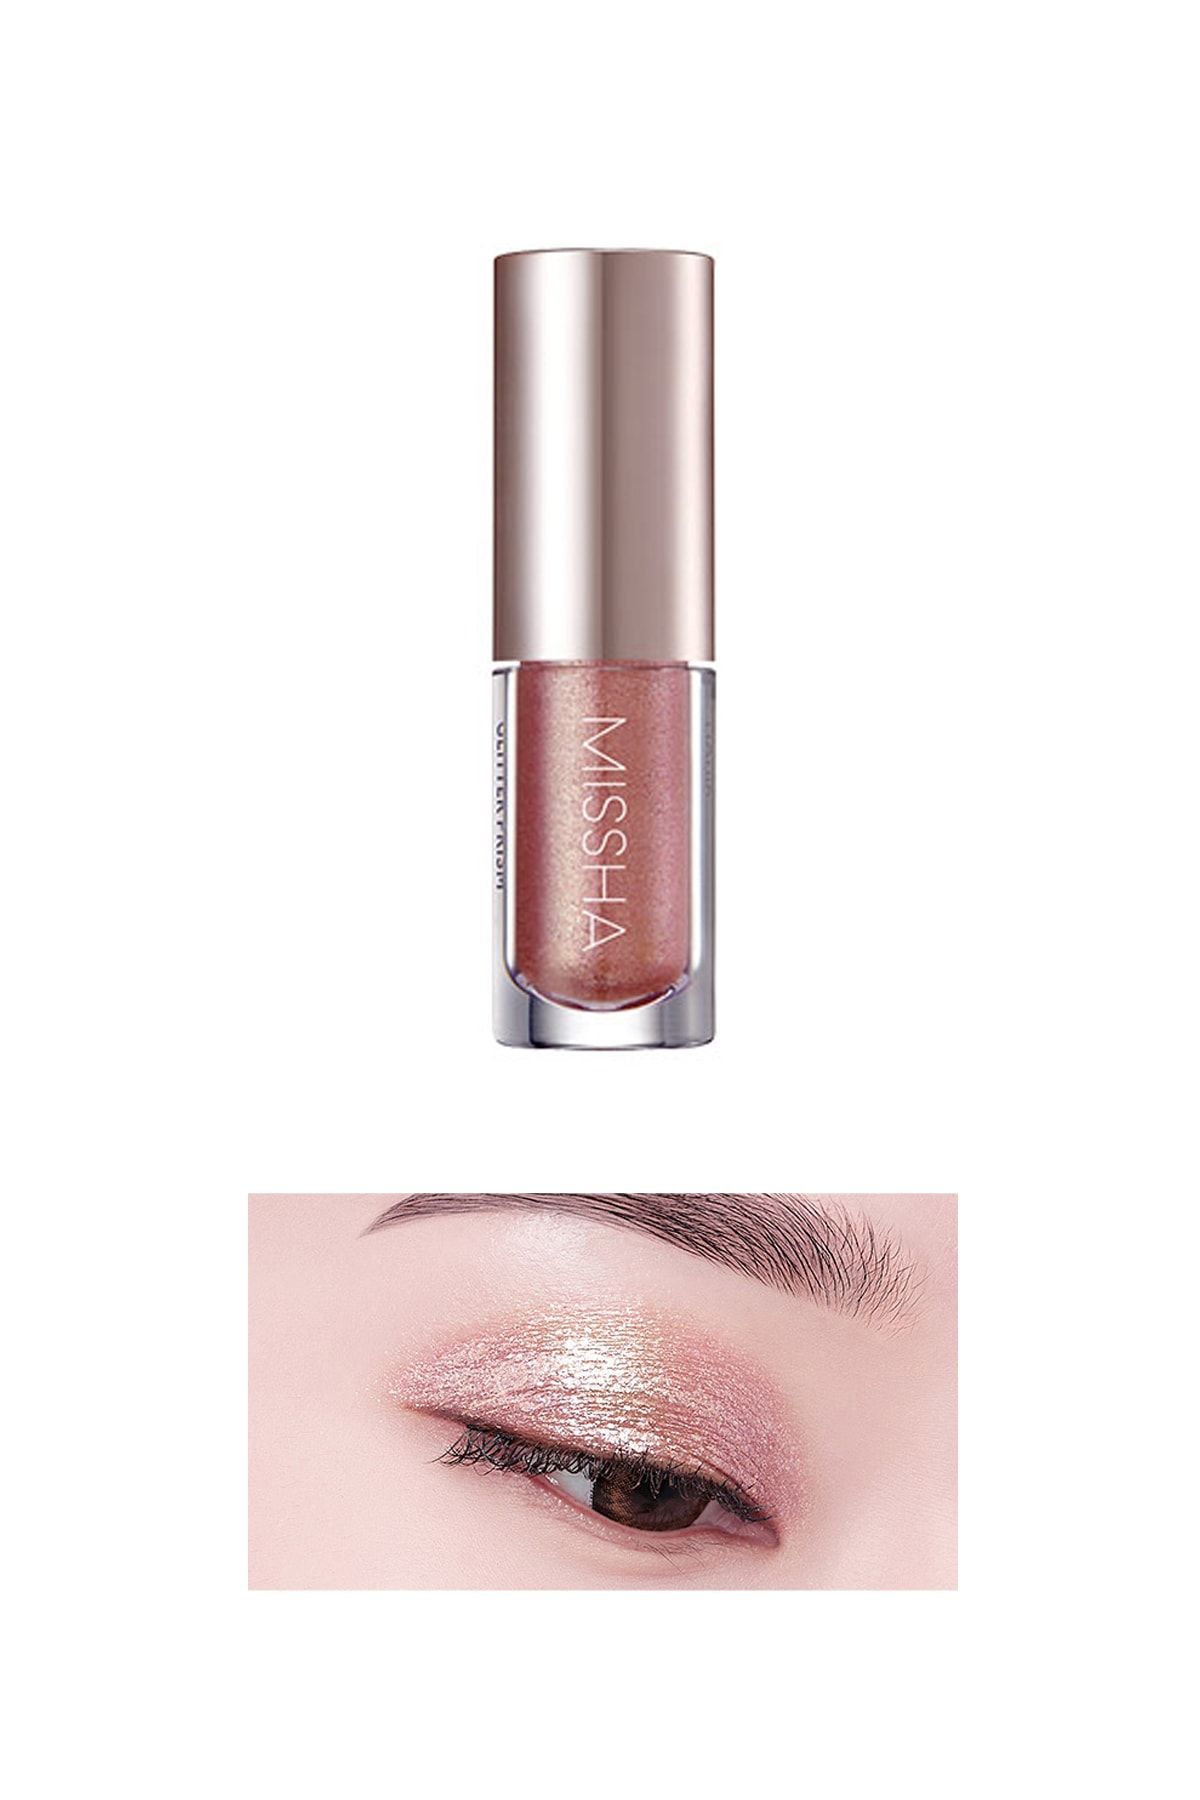 Missha Işıltılı ve Parlak Glitter Likit Göz Farı No.4 Eternal Rose Prism Liquid Eyeshadow Shine